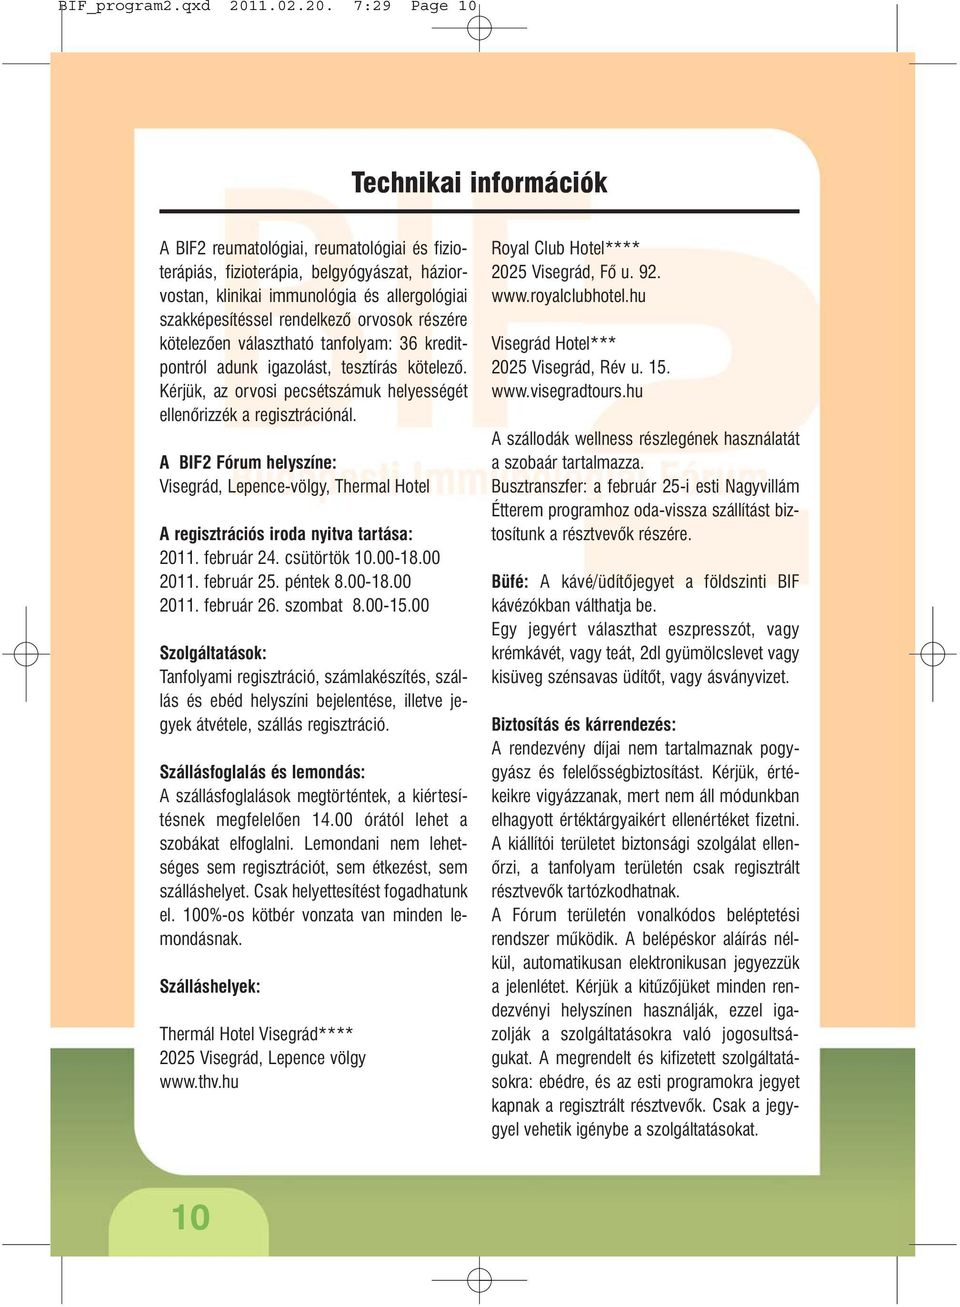 7:29 Page 10 Technikai információk A BIF2 reumatológiai, reumatológiai és fizioterápiás, fizioterápia, belgyógyászat, háziorvostan, klinikai immunológia és allergológiai szakképesítéssel rendelkezõ